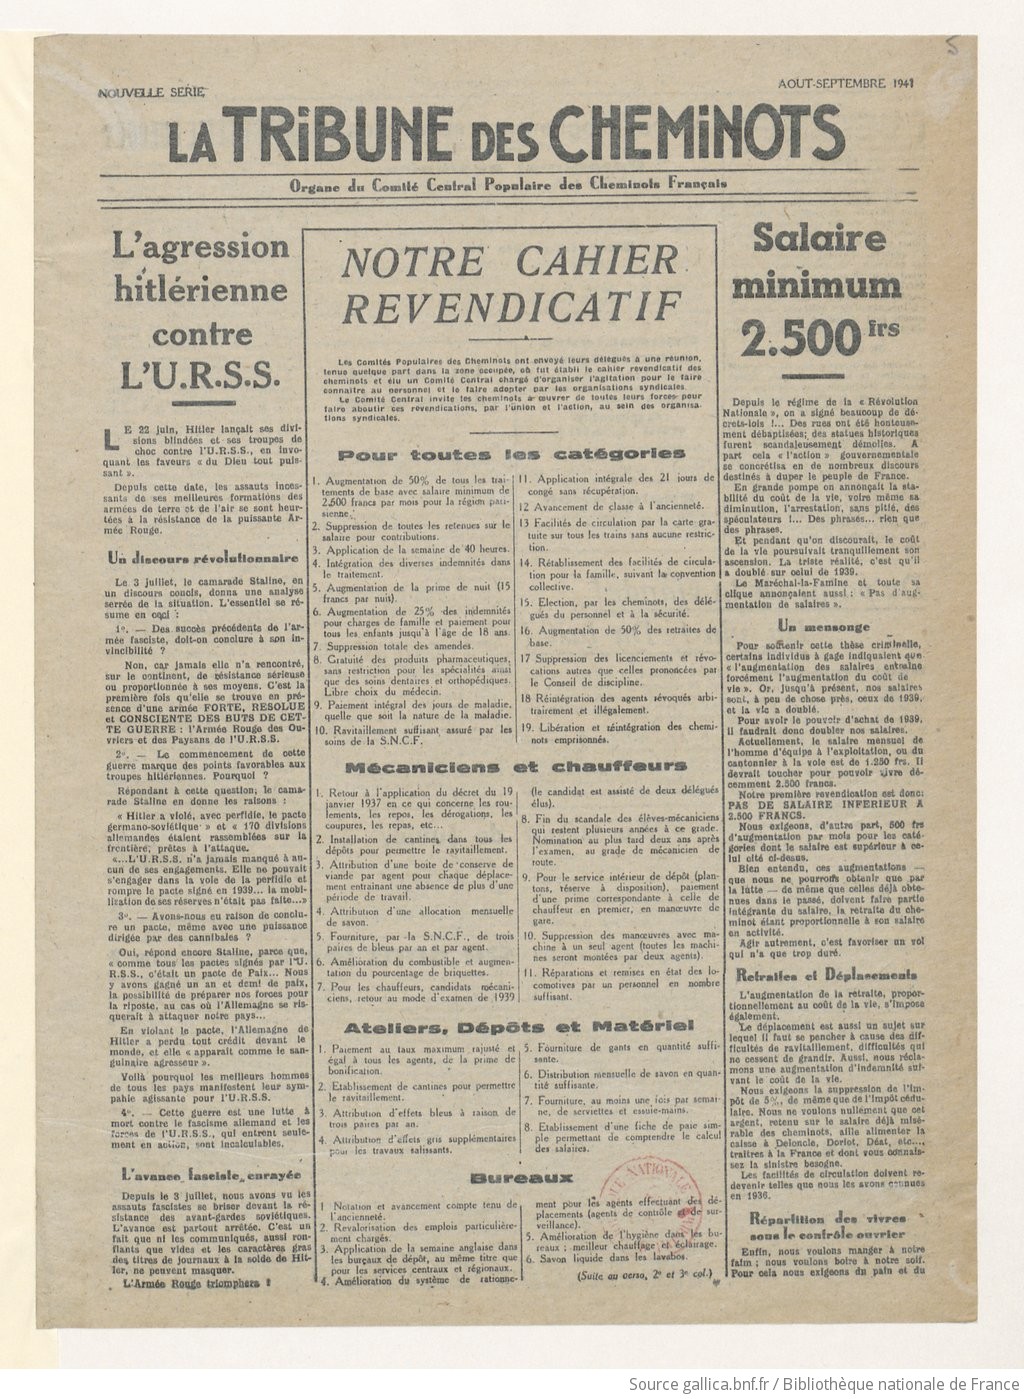 La Tribune des cheminots [clandestine], [sans numérotation], août-septembre 1941